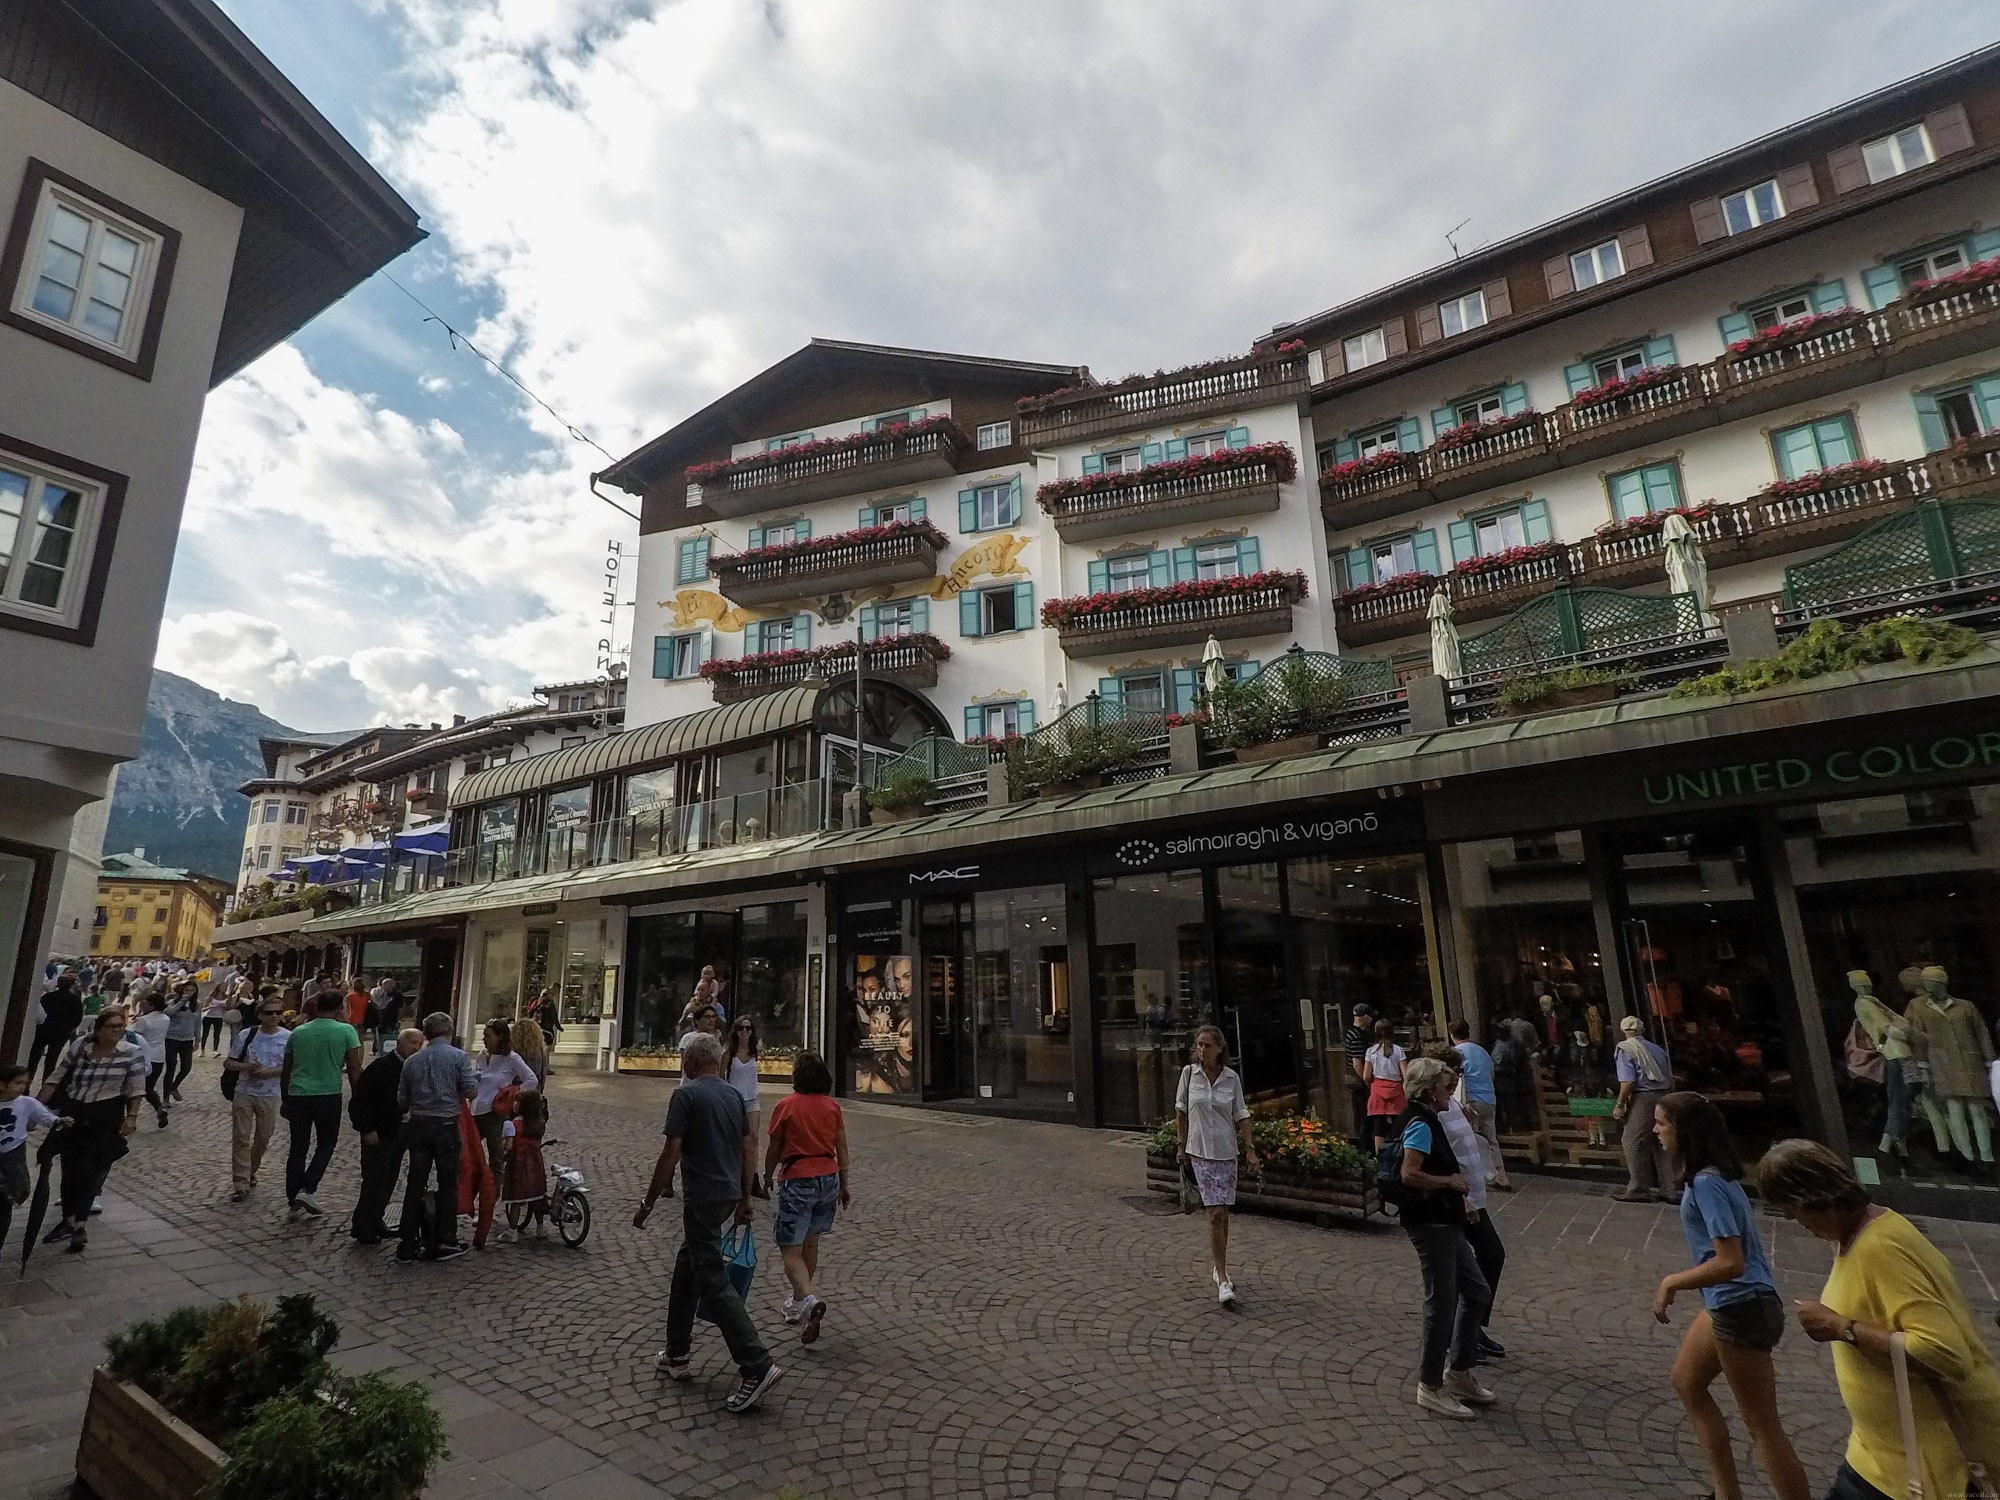 Pešia zóna je prakticky dlhá ulica so značkovými obchodmi a hotelmi.